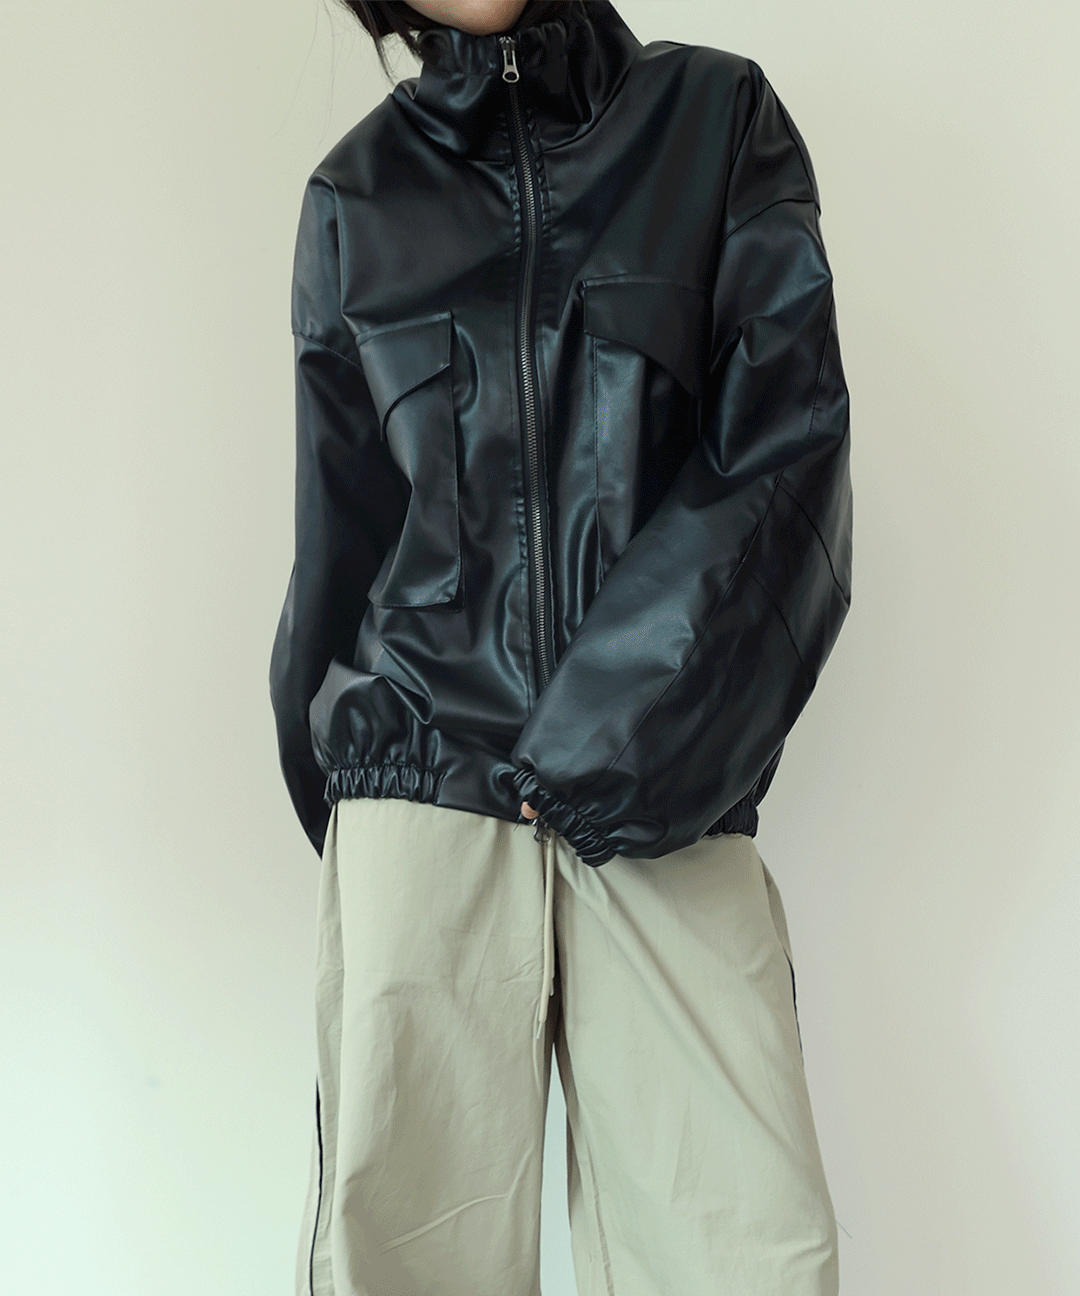 남자 여성 오버핏 레더 스트링 자켓 - 2 colors